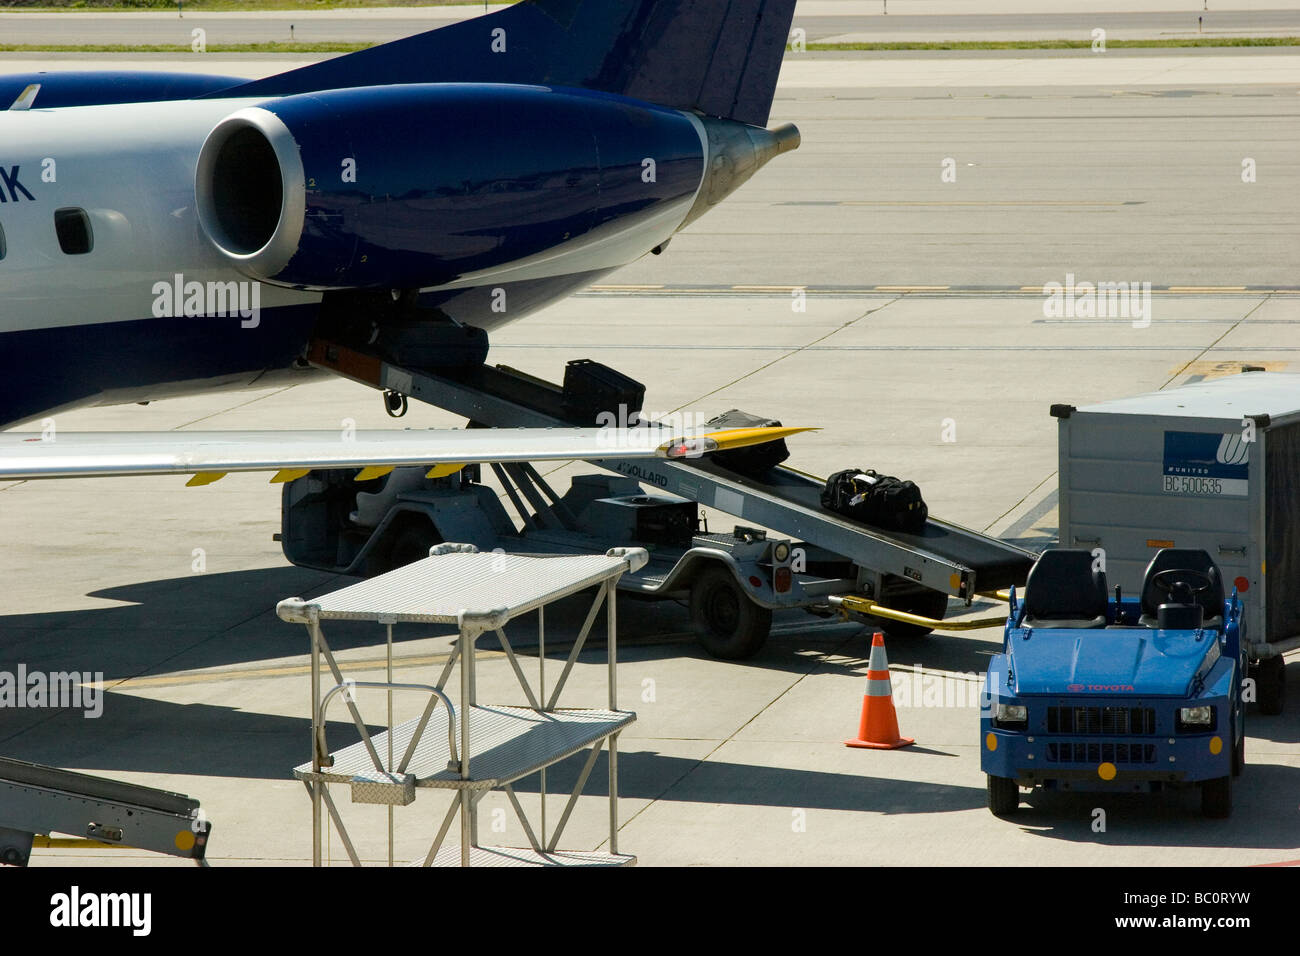 Flugzeug auf Asphalt mit Gepäck geladen wird Stockfoto